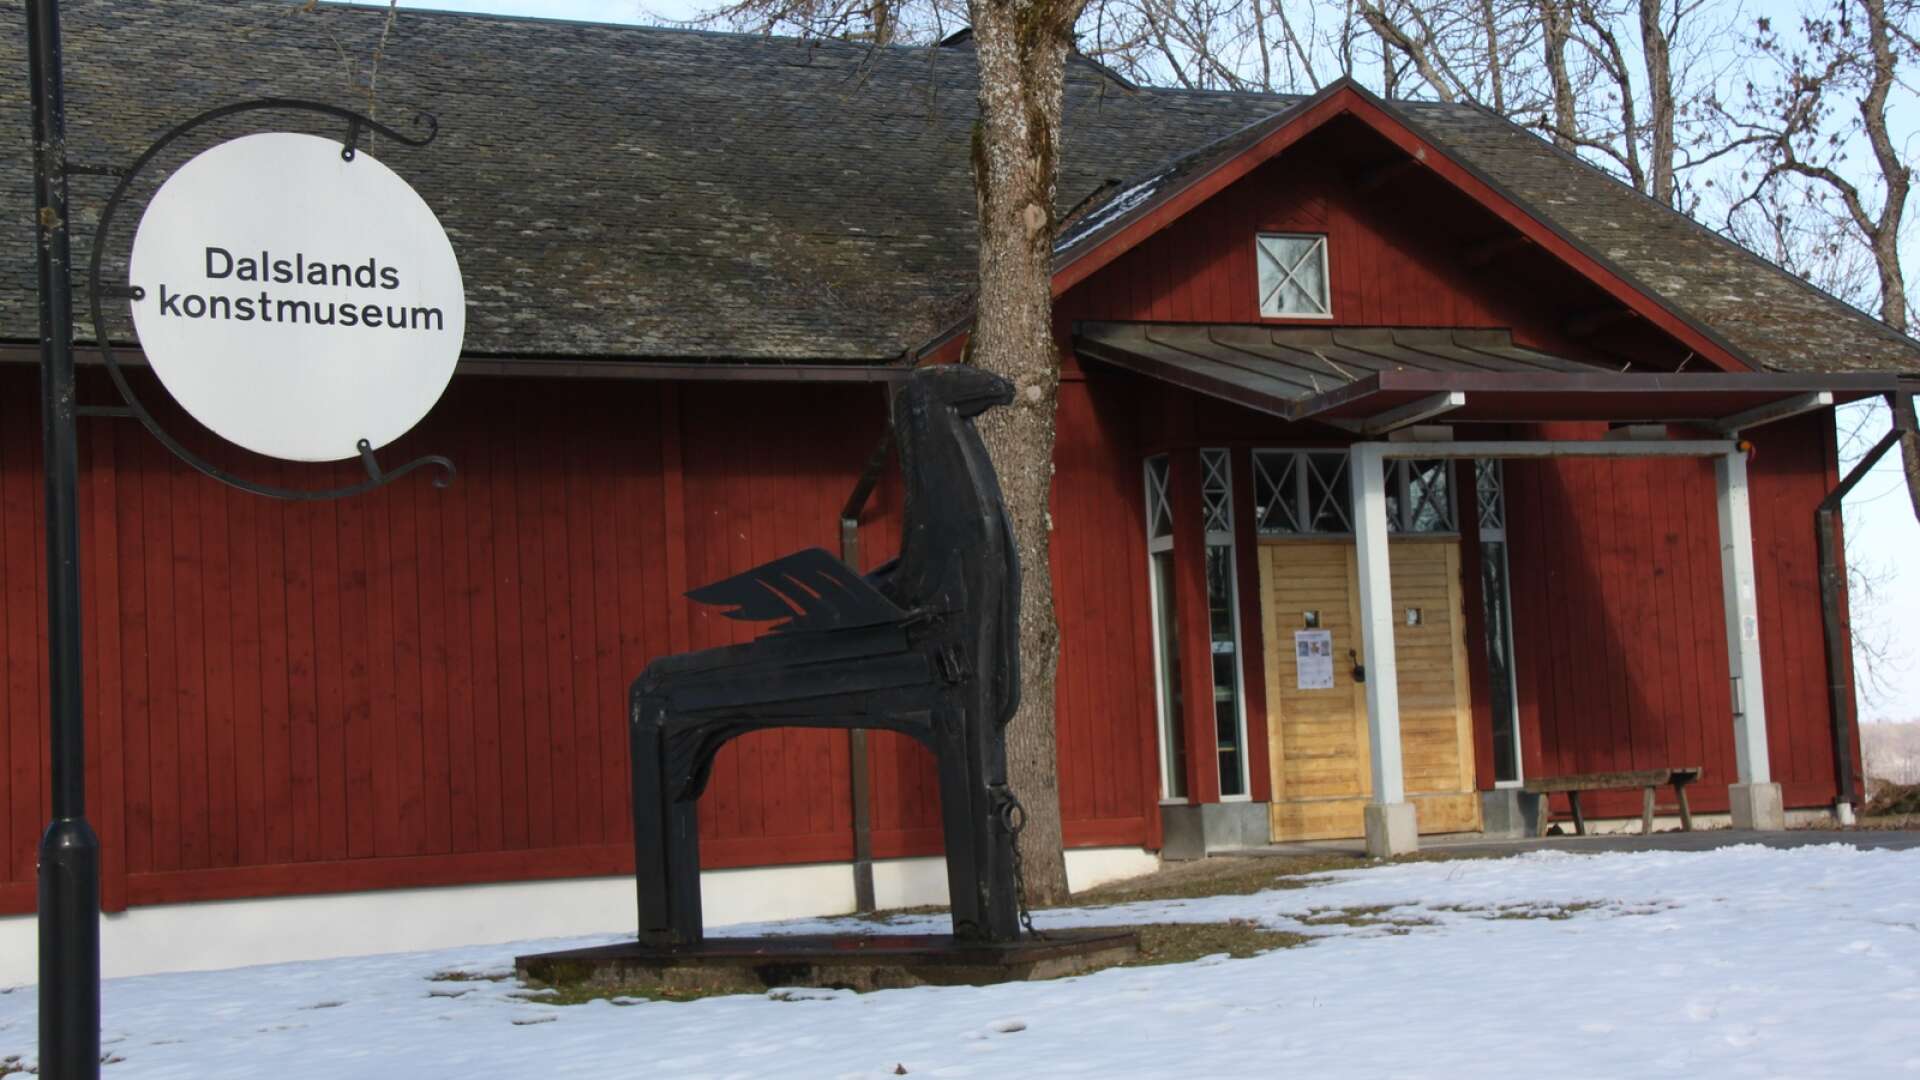 Dalslands konstmuseum kommer att vara en av skådeplatserna för Kontinent Dalsland i sommar.